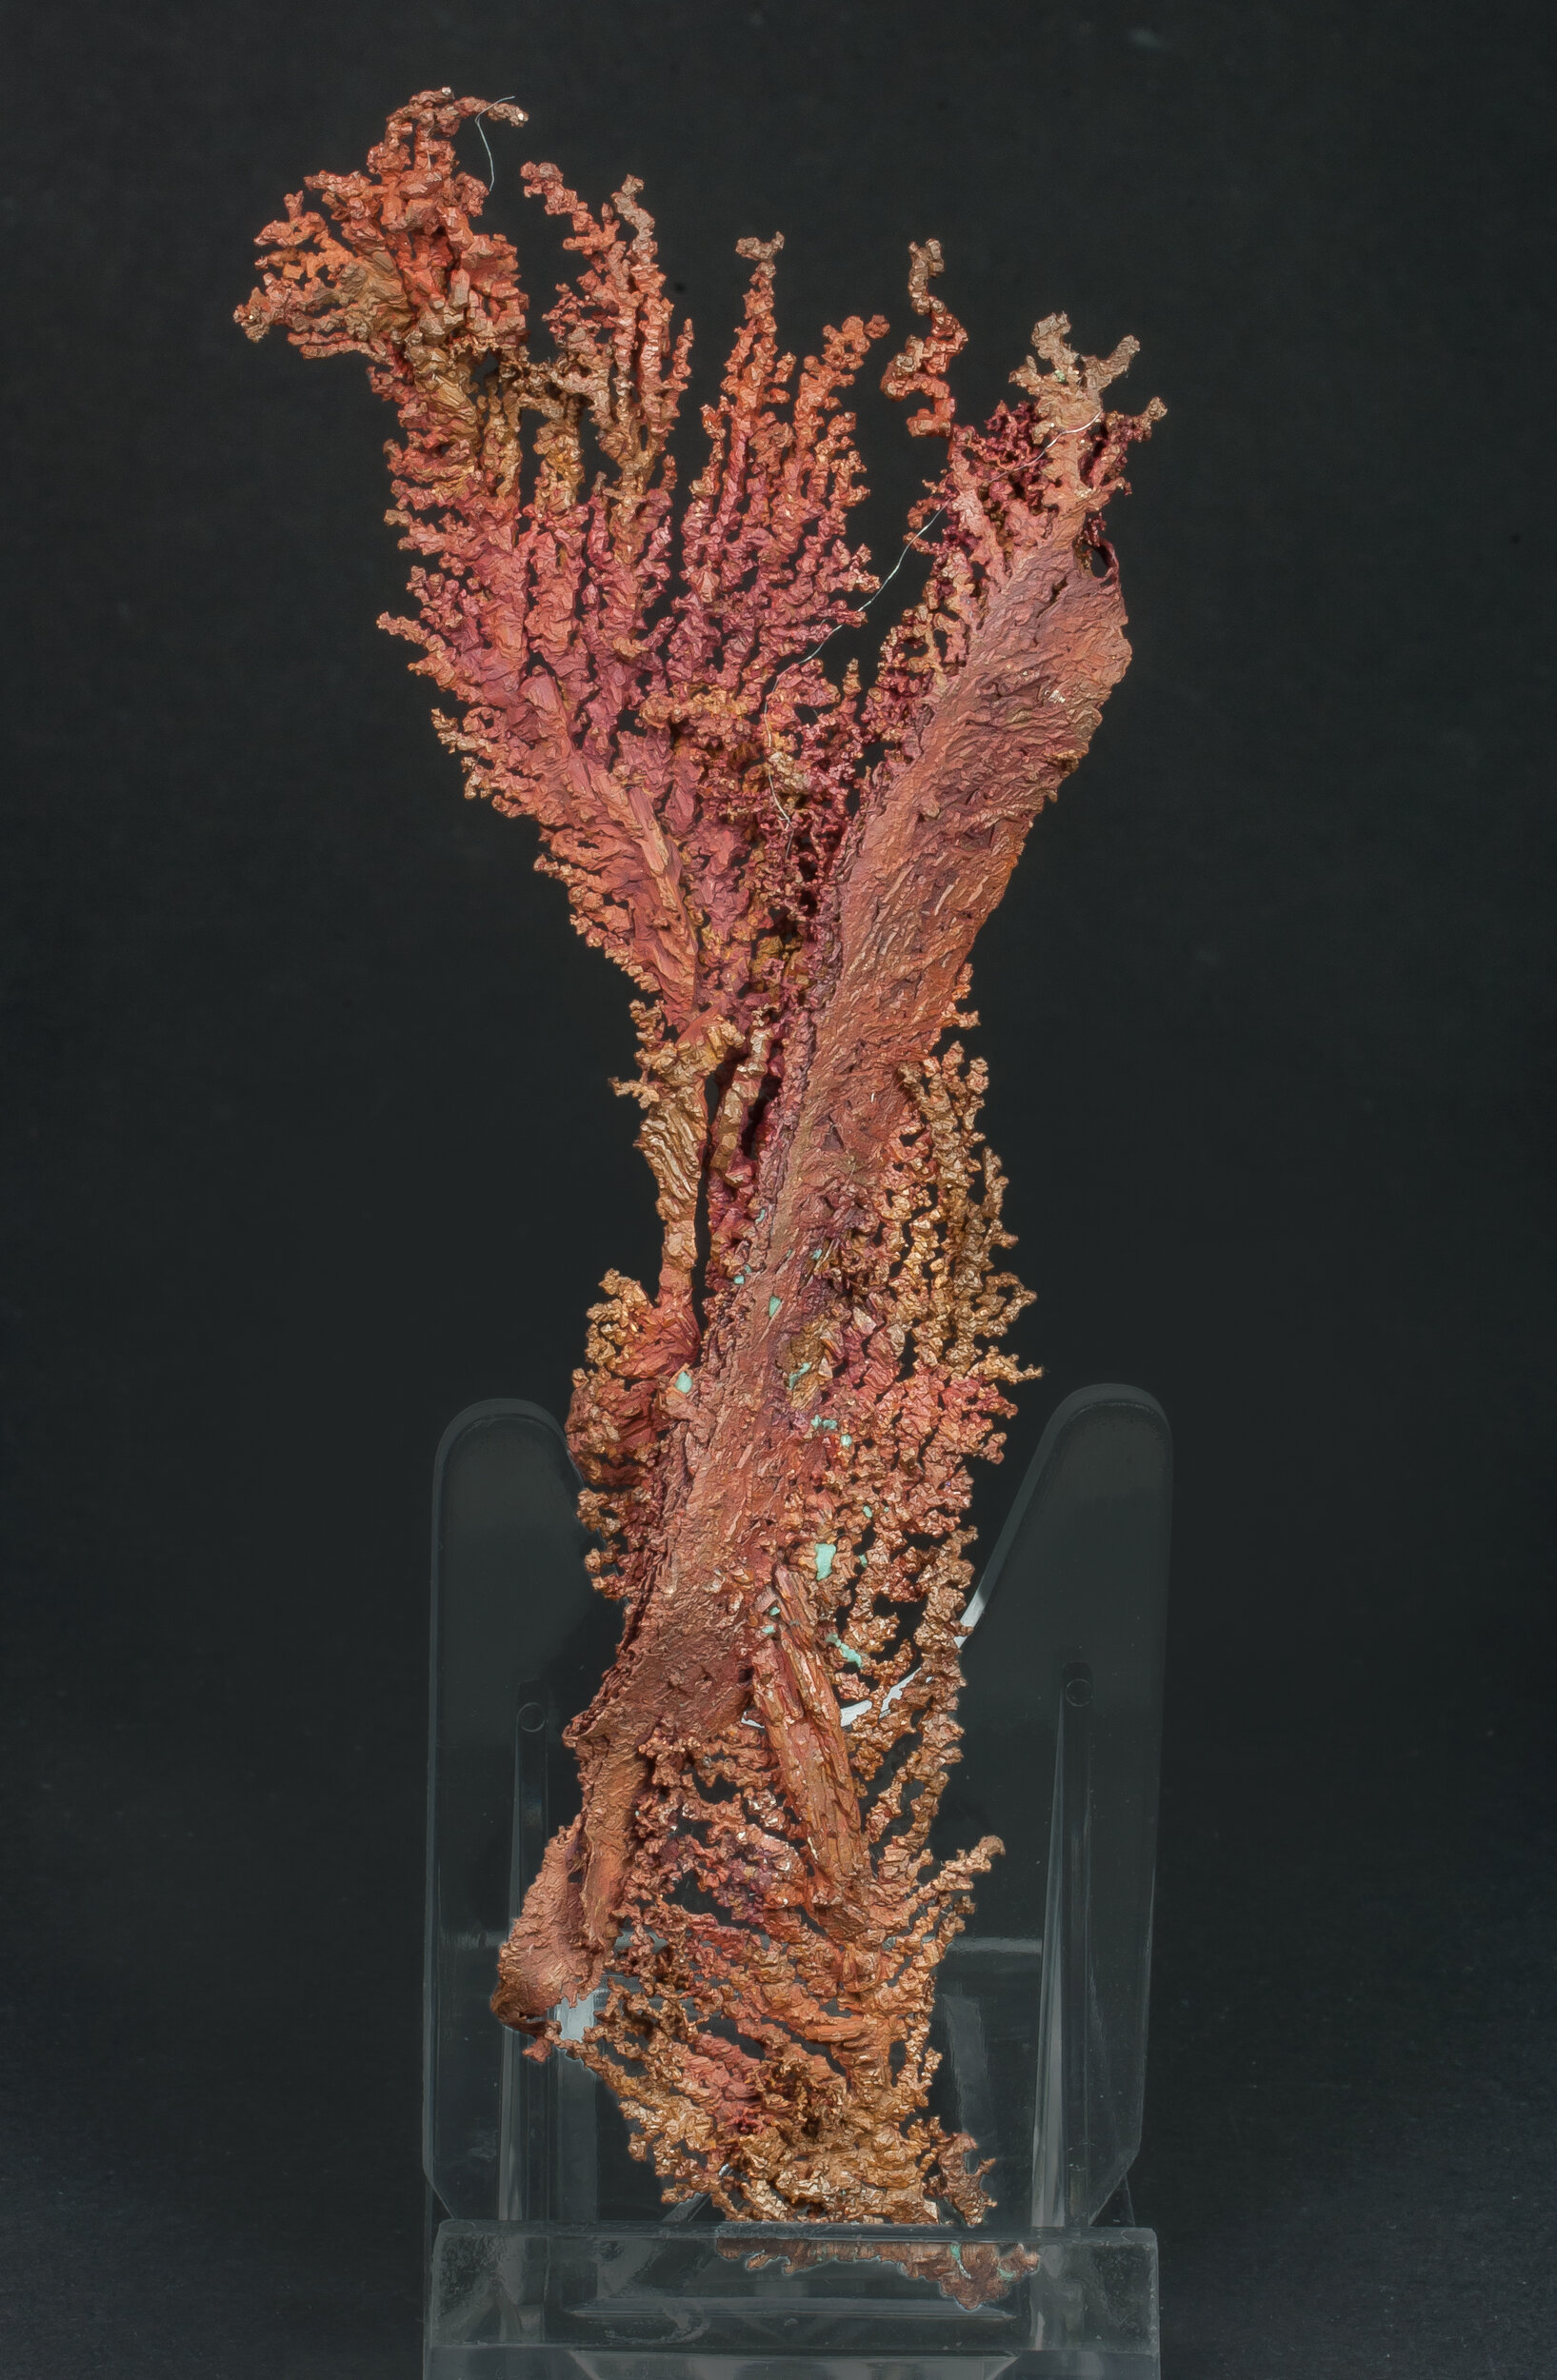 specimens/s_imagesAQ1/Copper-TXF91AQ1r.jpg